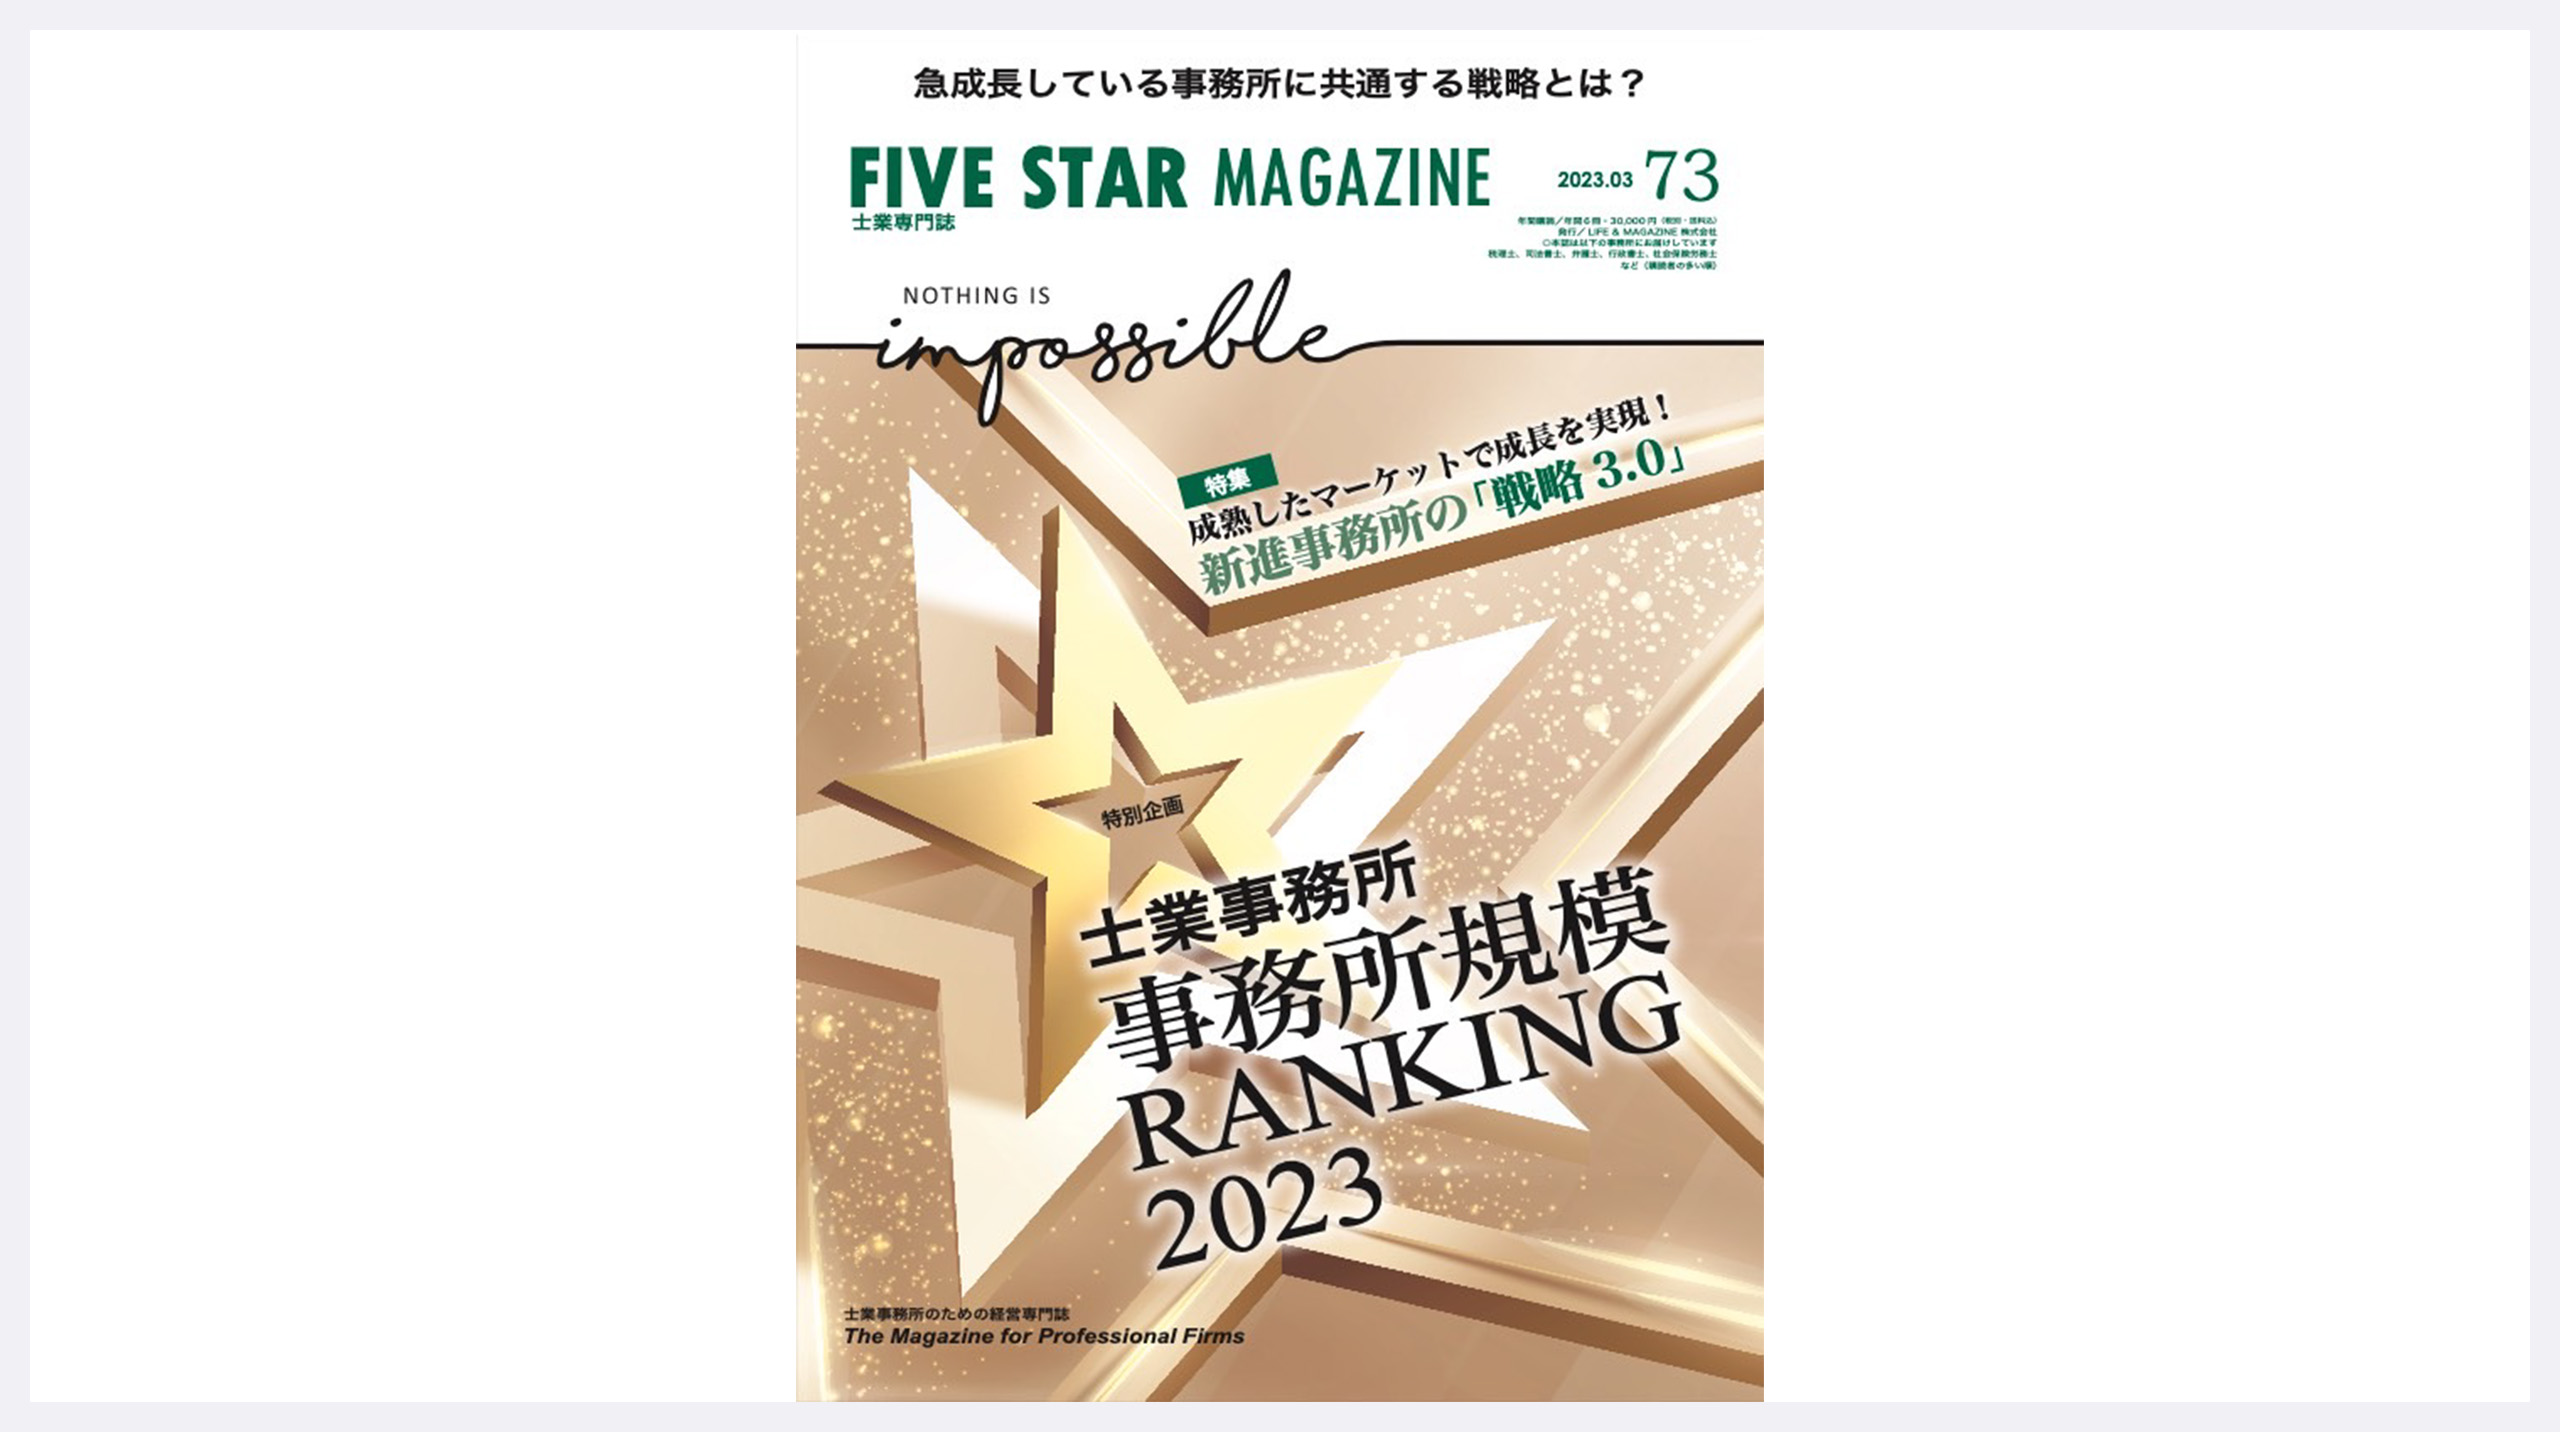 士業専門誌FIVE STAR MAGAZINE2023年3月号の特集記事にて代表インタビュー掲載いただきました。